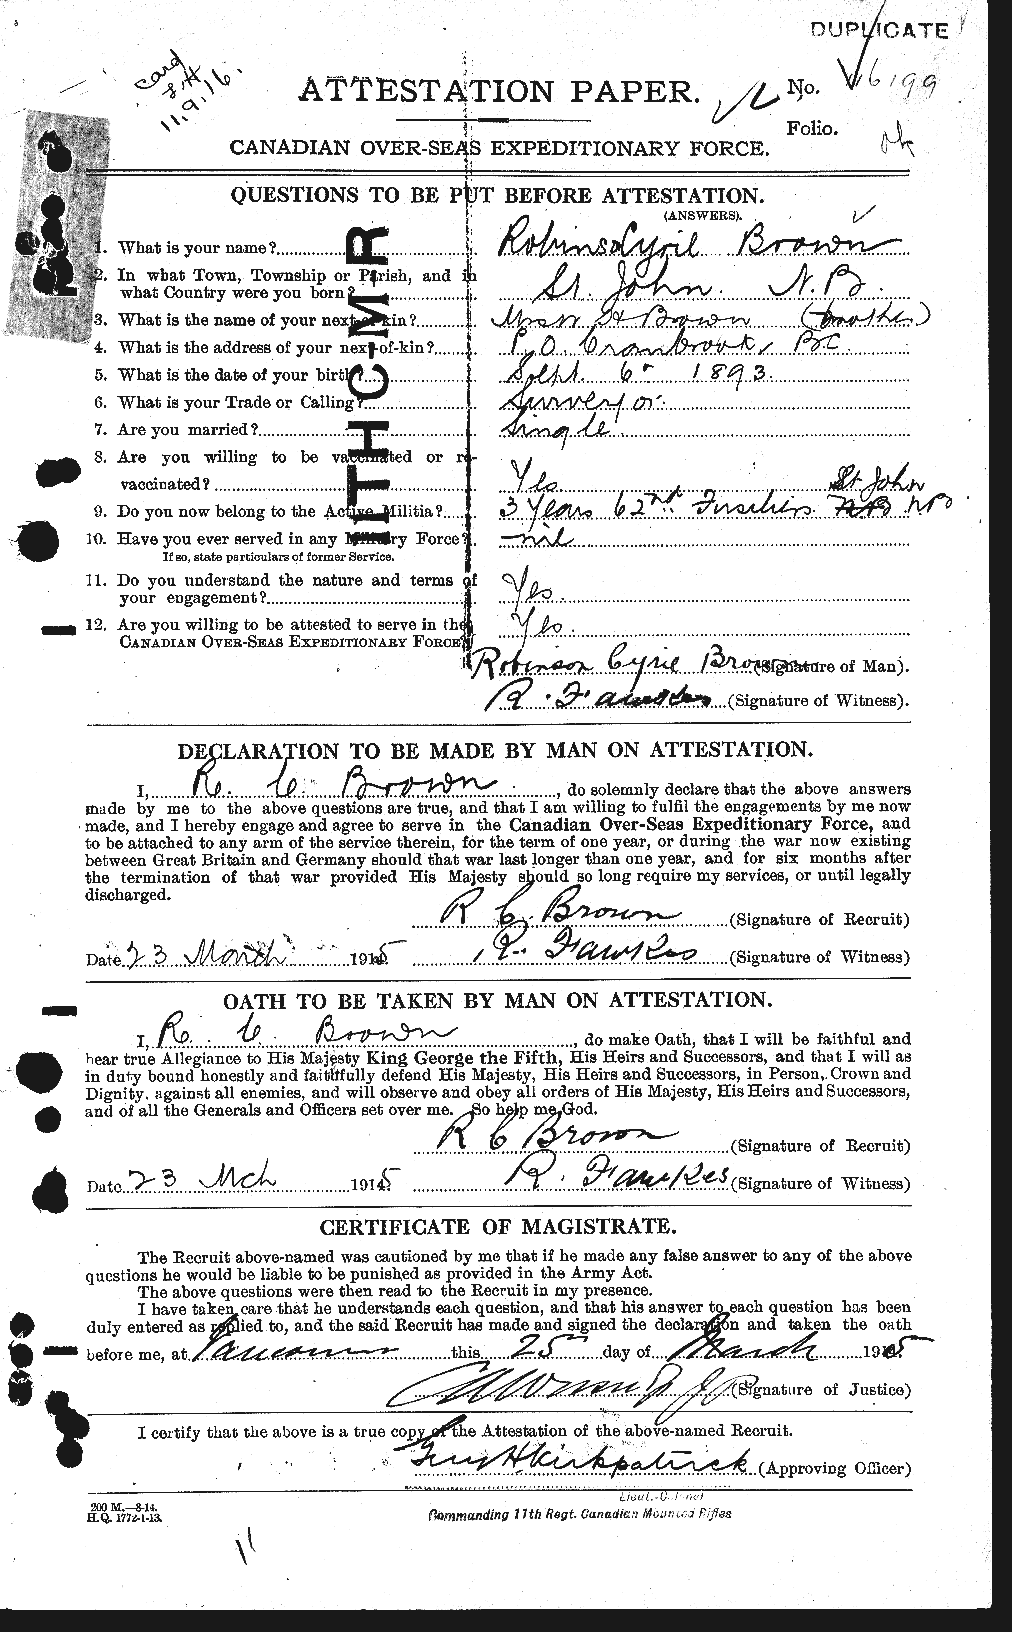 Dossiers du Personnel de la Première Guerre mondiale - CEC 265284a